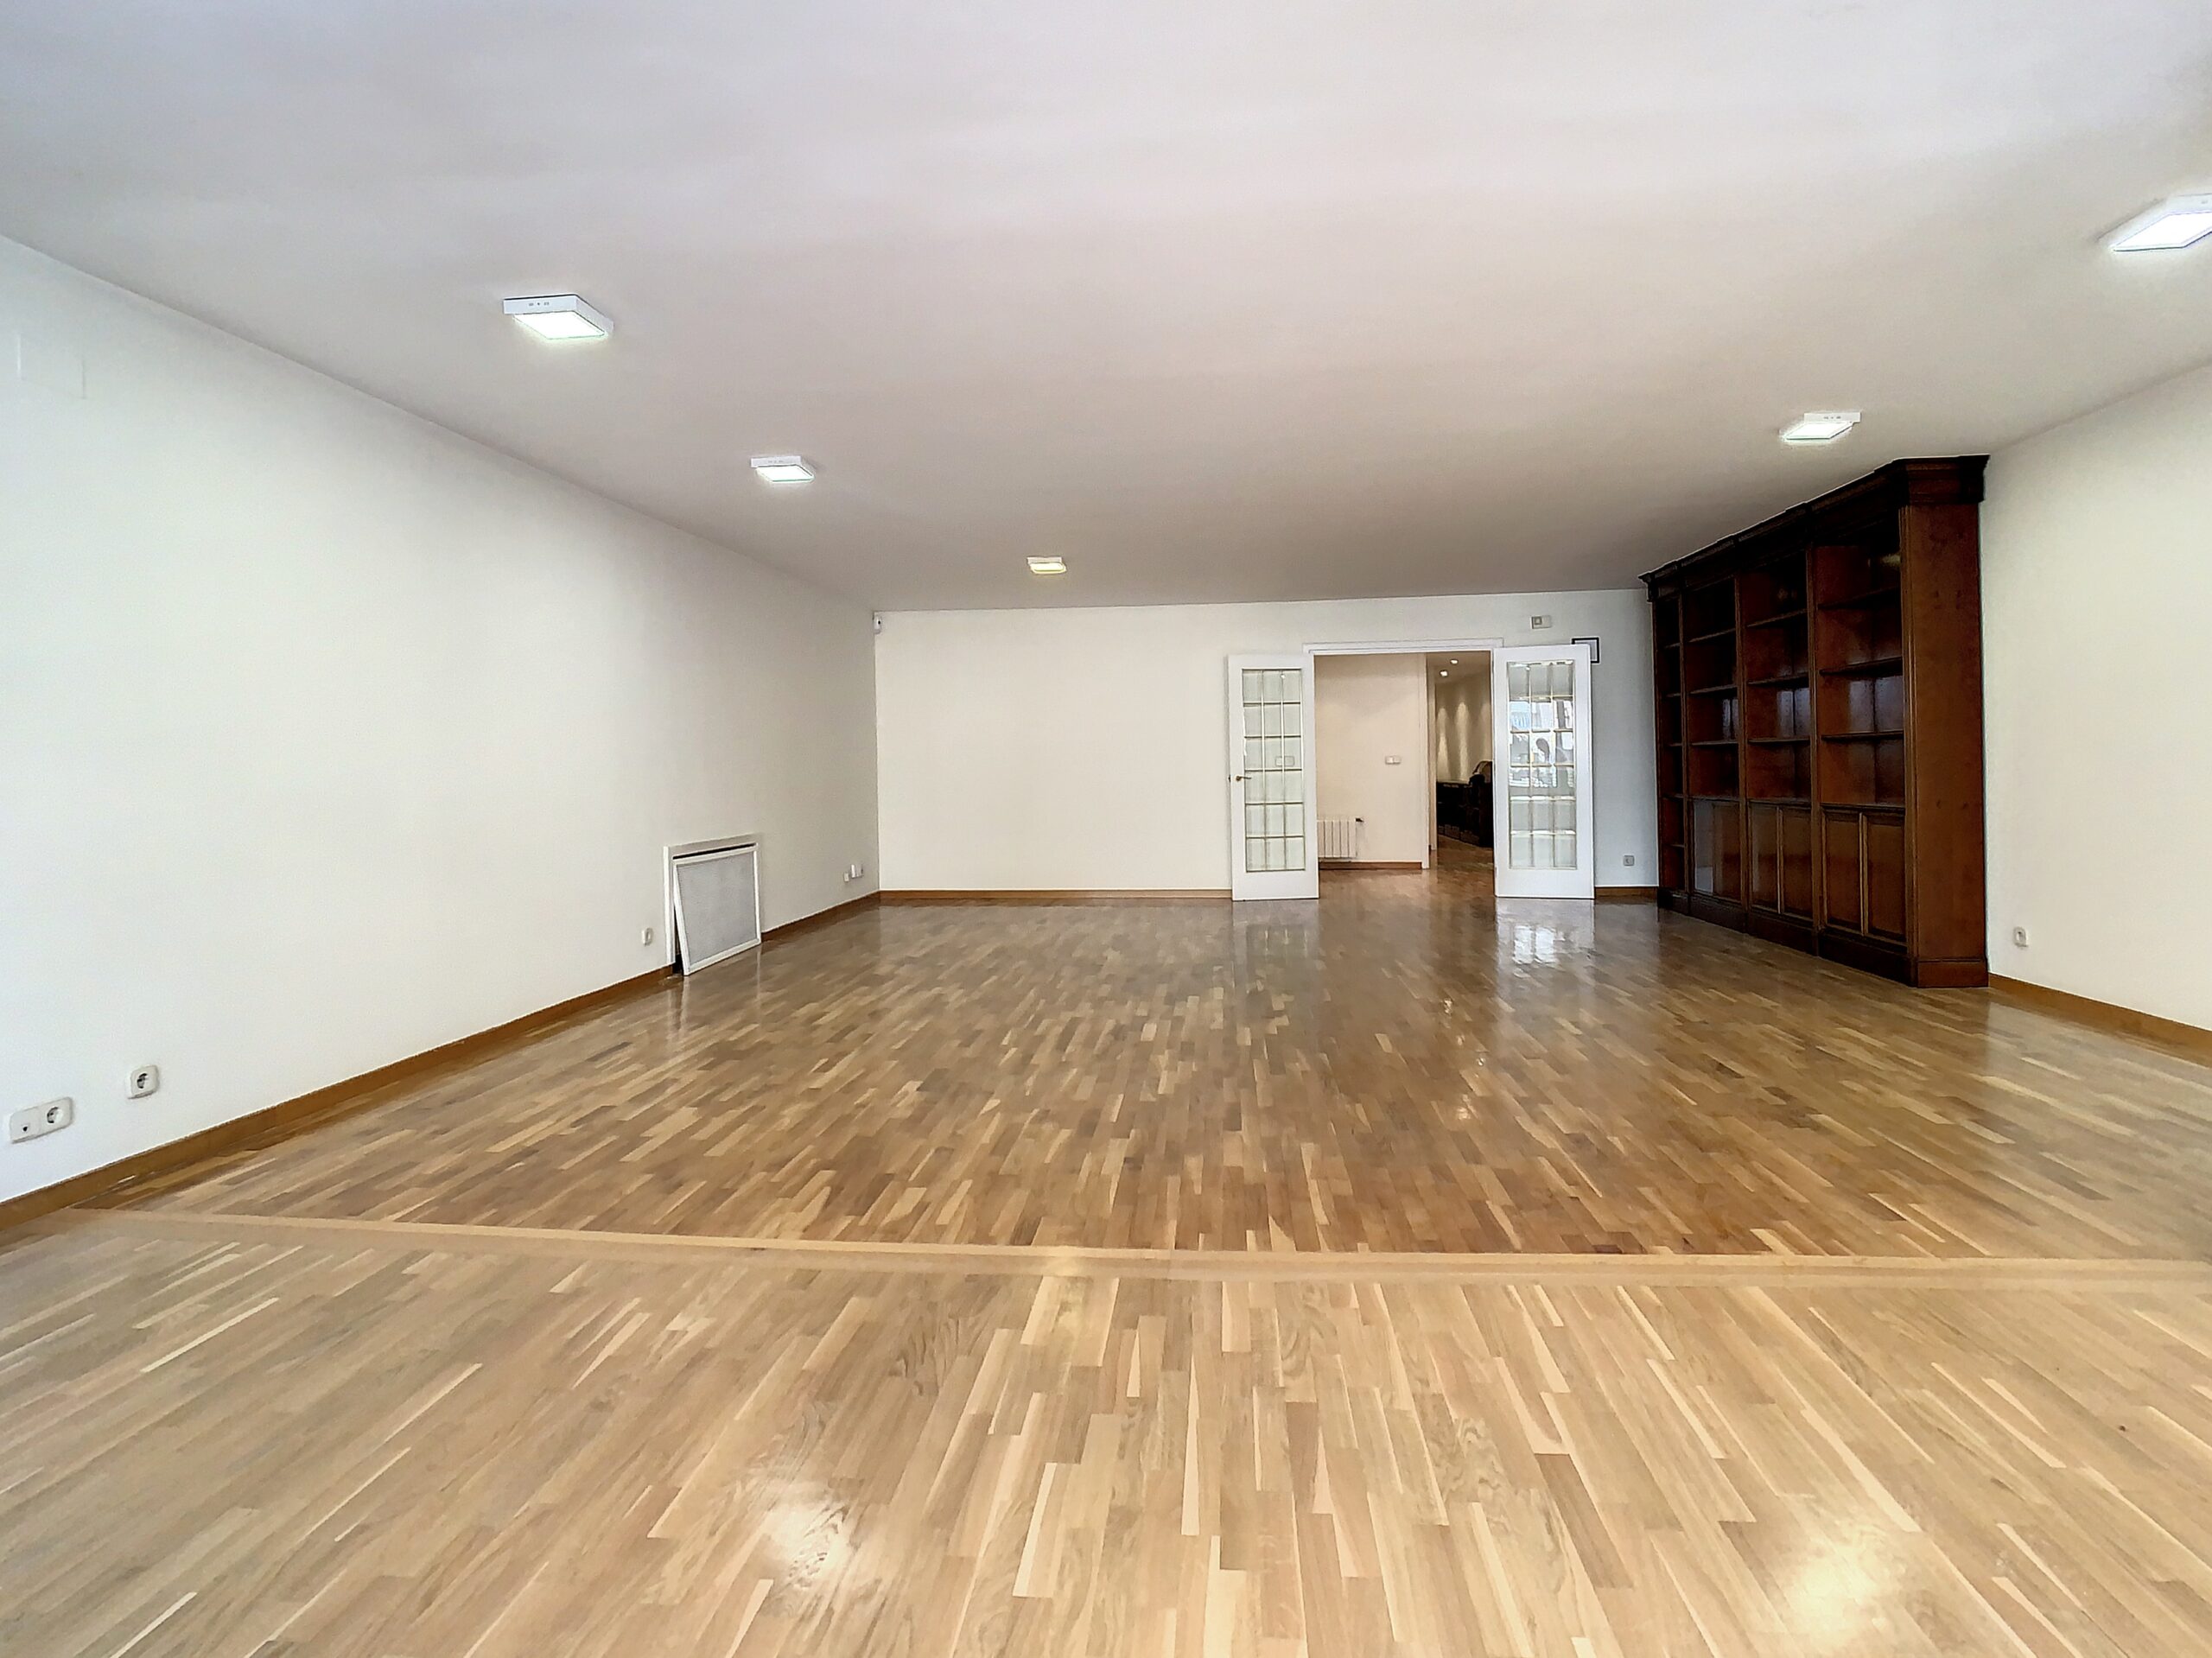 Home Staging Casamayor en salon de vivienda Alicante